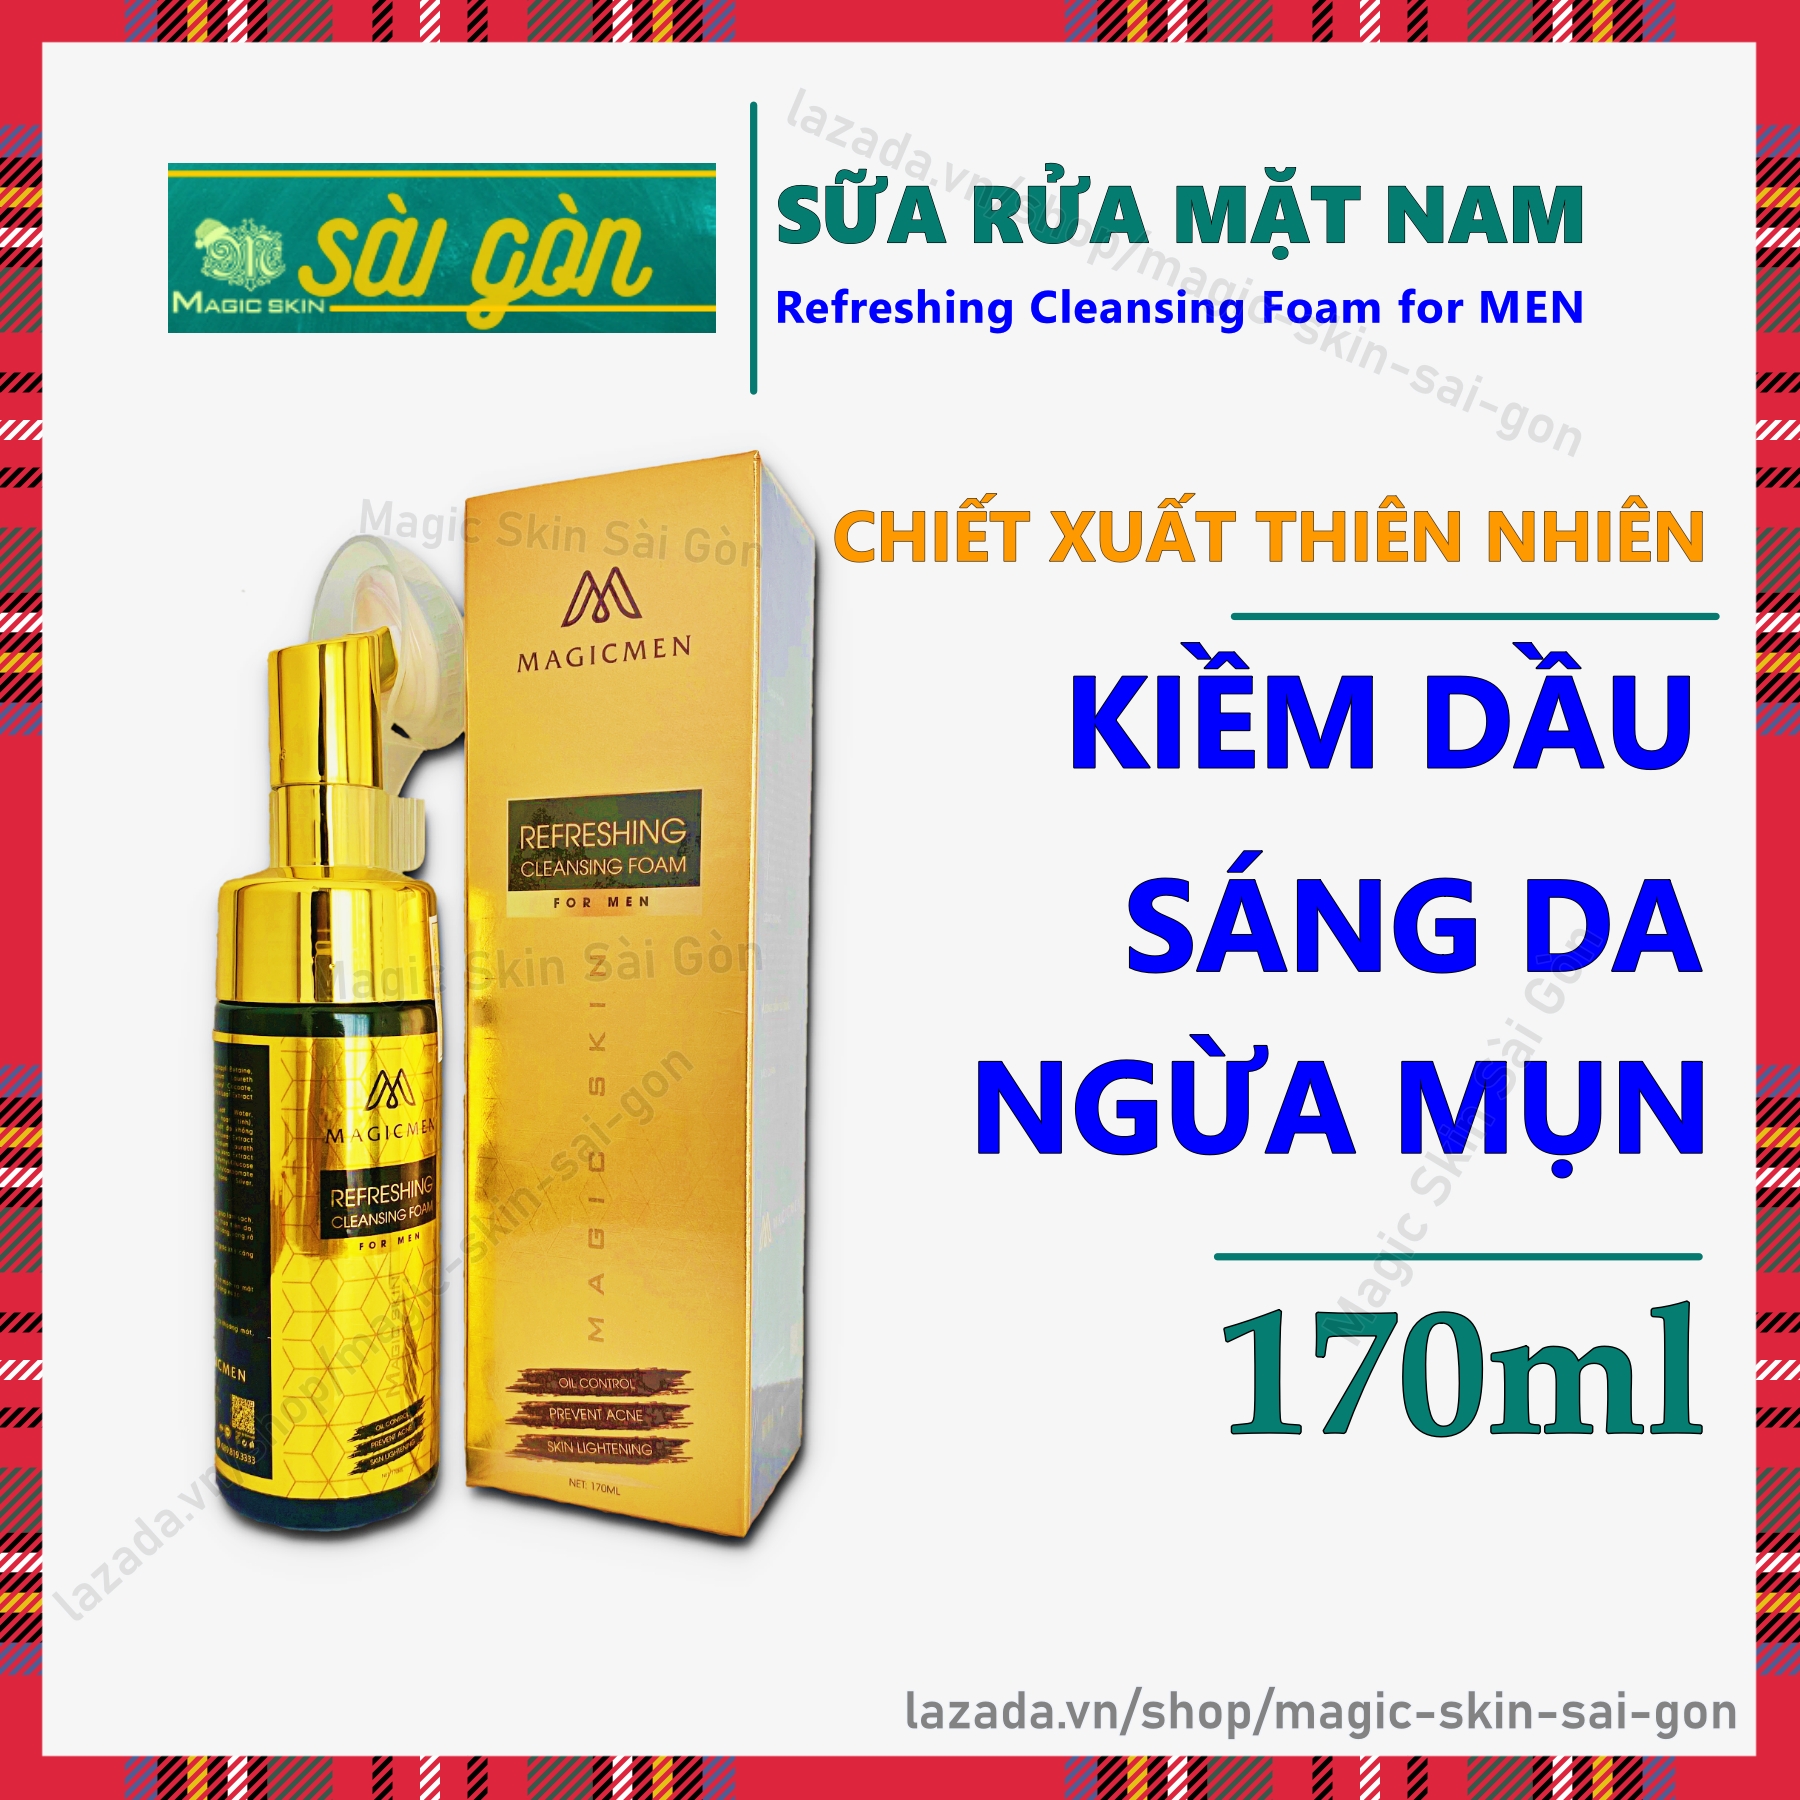 Sữa rửa mặt NAM Magic Skin - Sạch Da, Kiềm Dầu, Ngừa Mụn - Chiết Xuất Thiên Nhiên